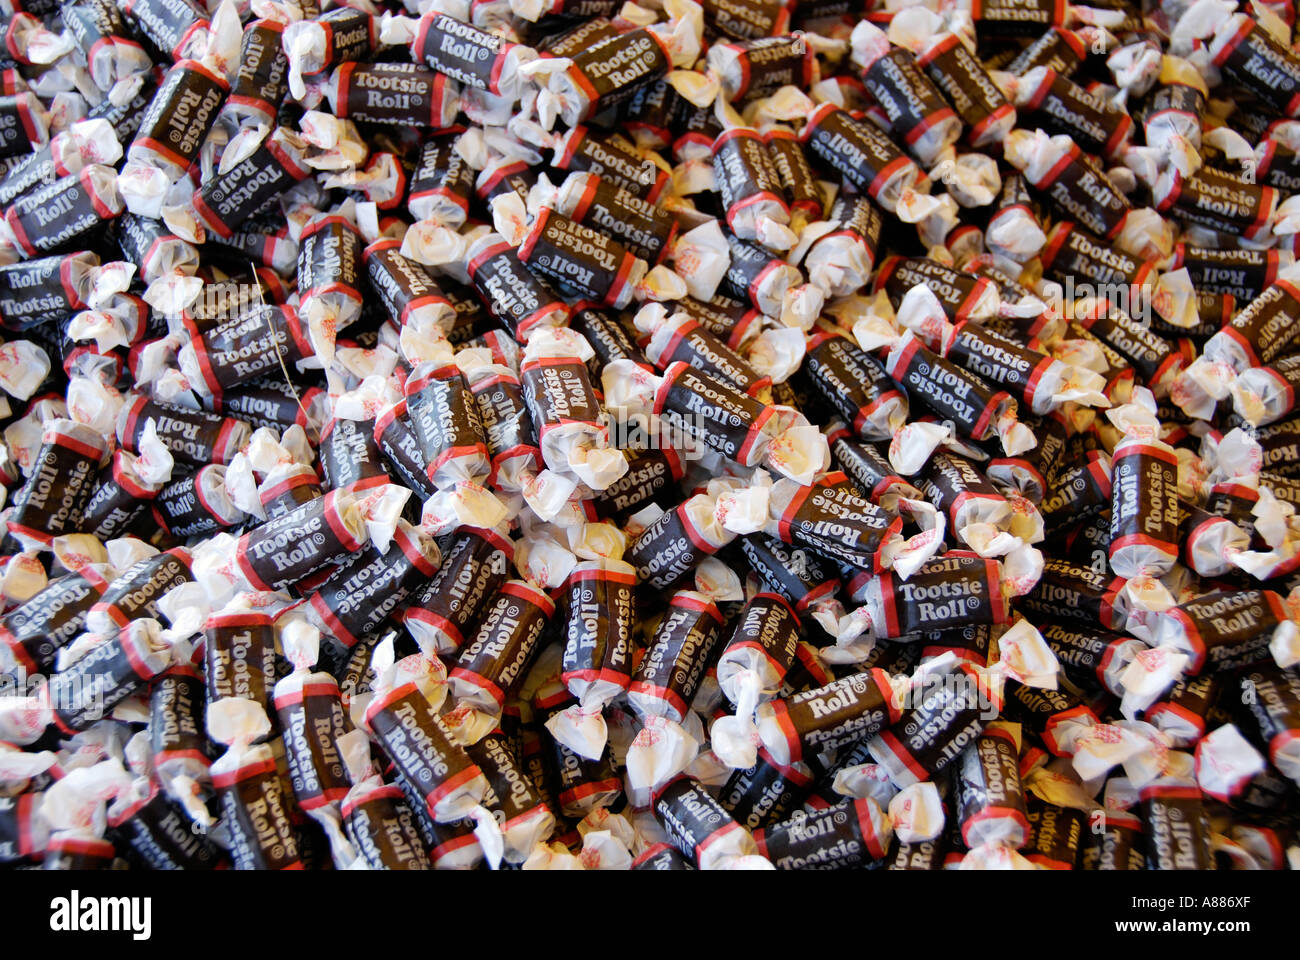 Patrón de caramelos Tootsie rolls Foto de stock